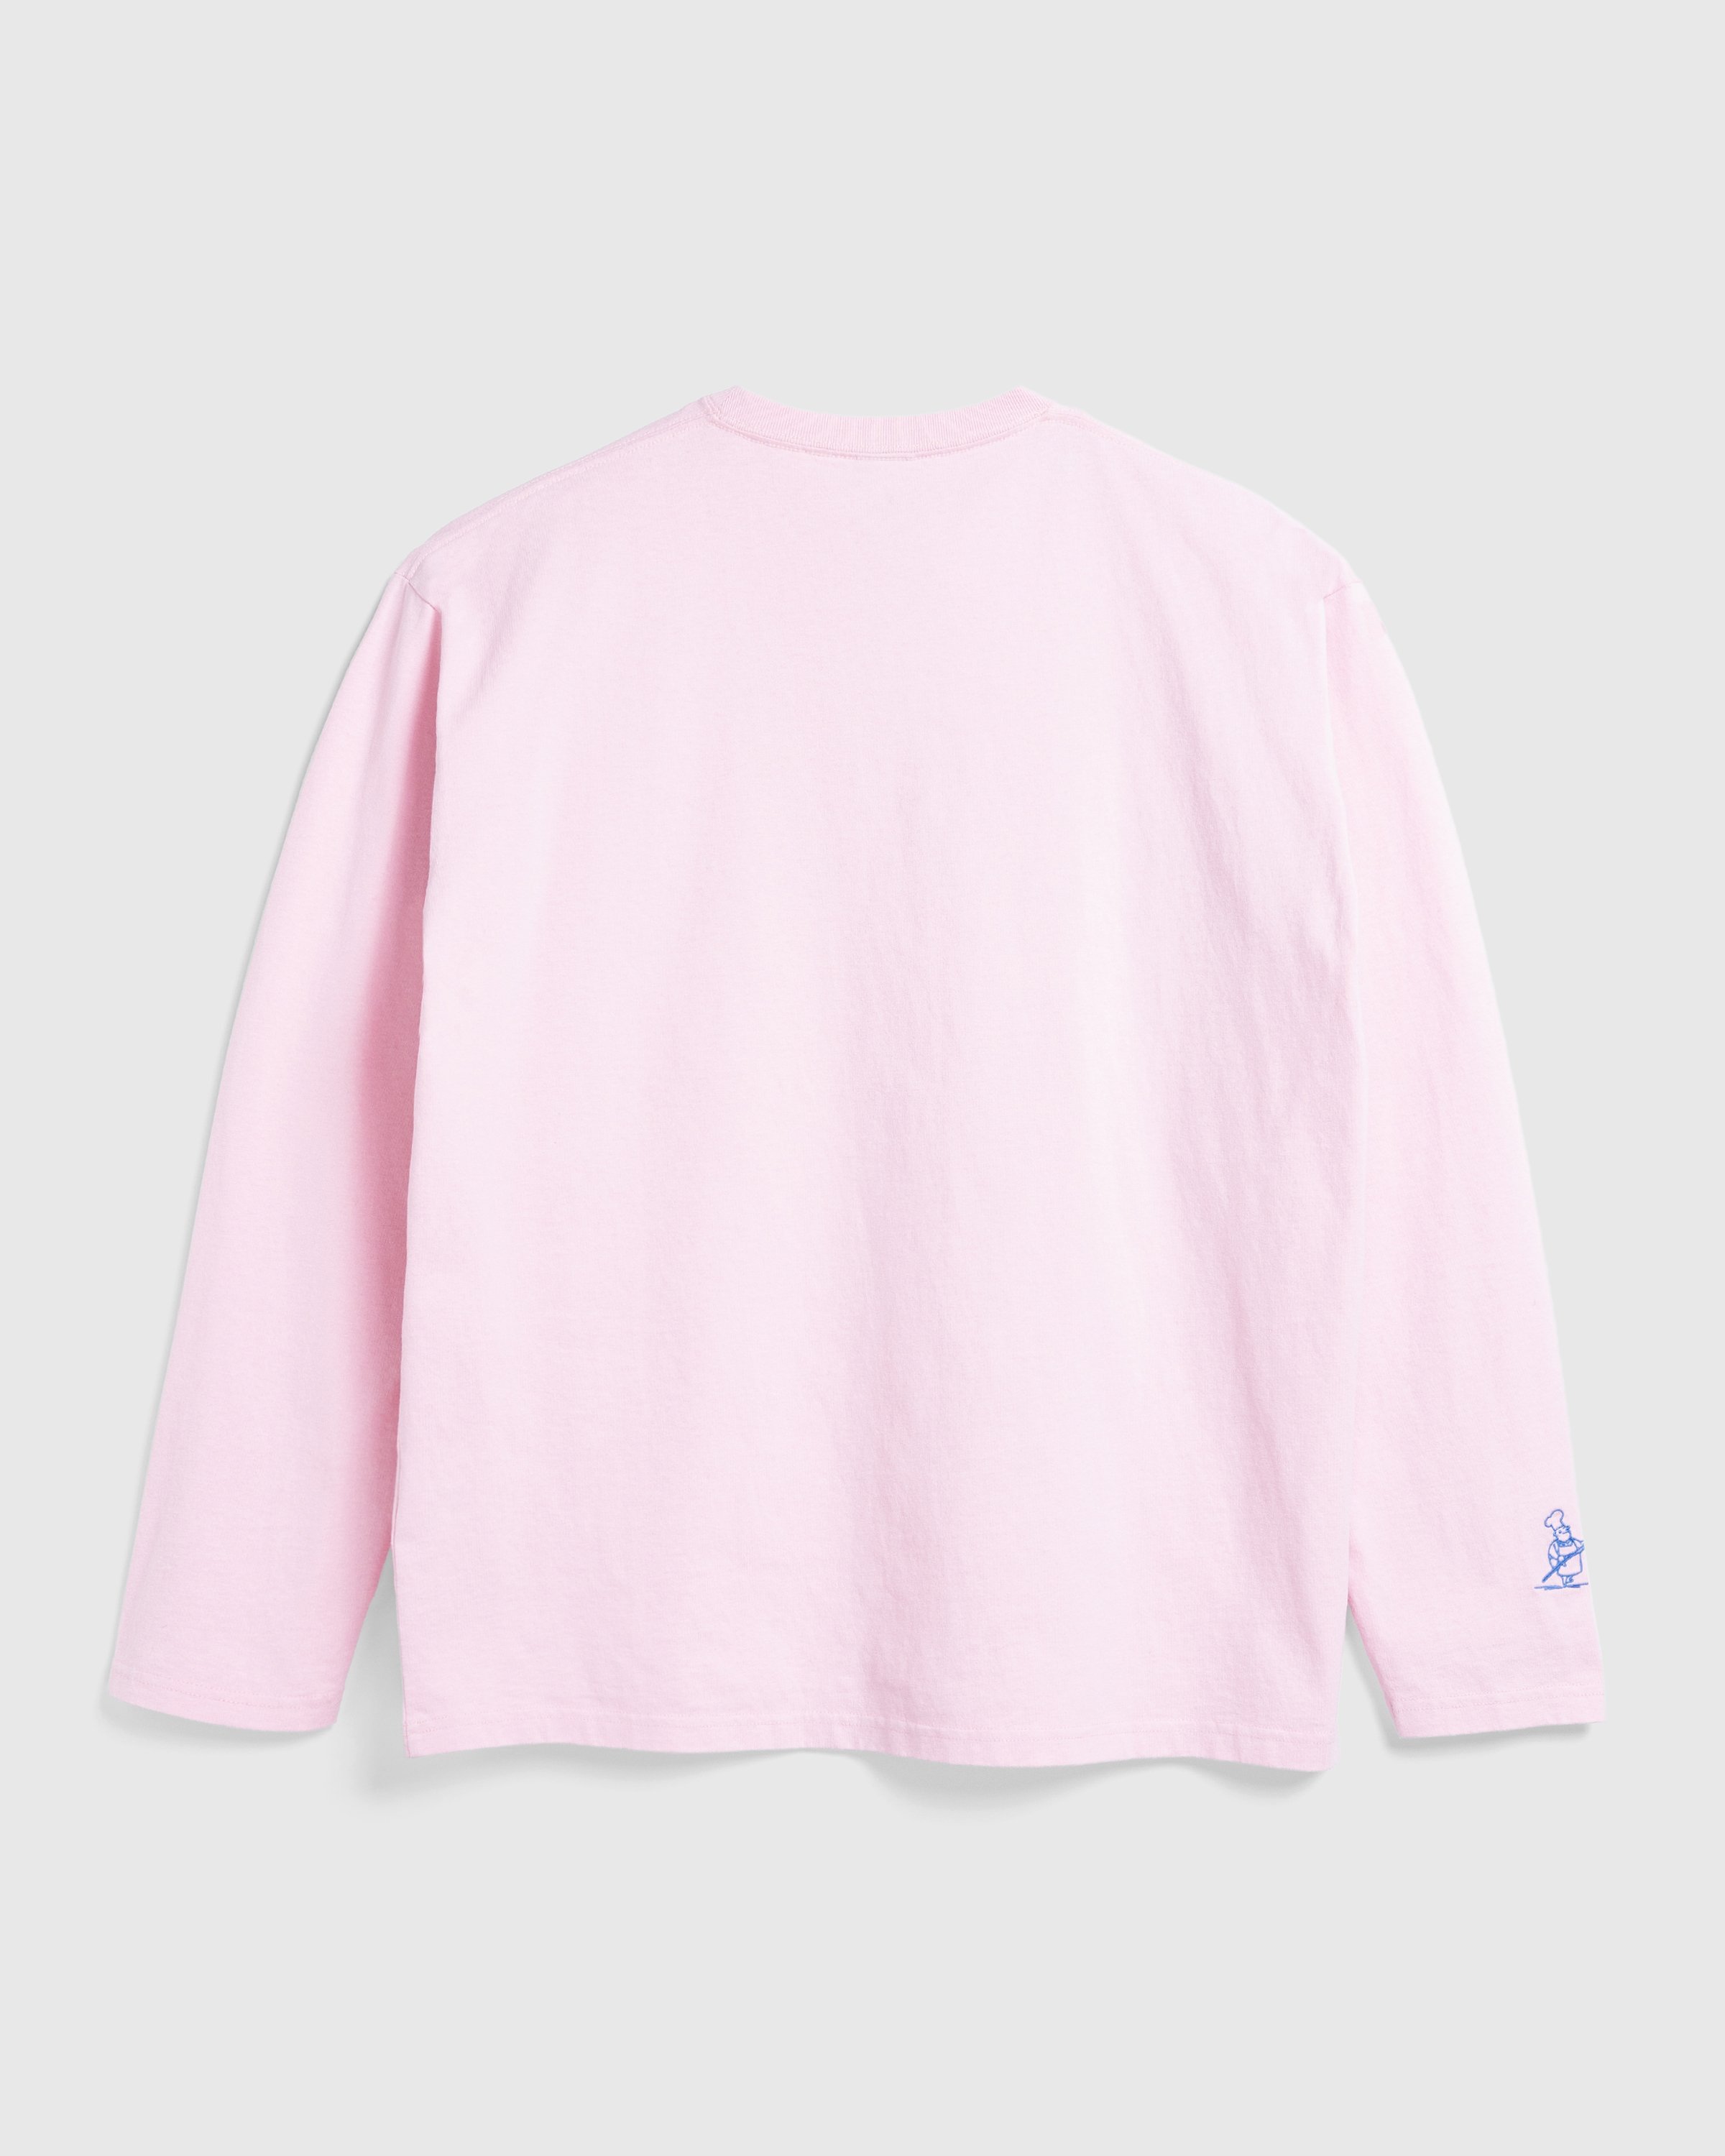 Beigel Bake x Highsnobiety - Pink Long Sleeves Tee - Clothing -  - Image 2